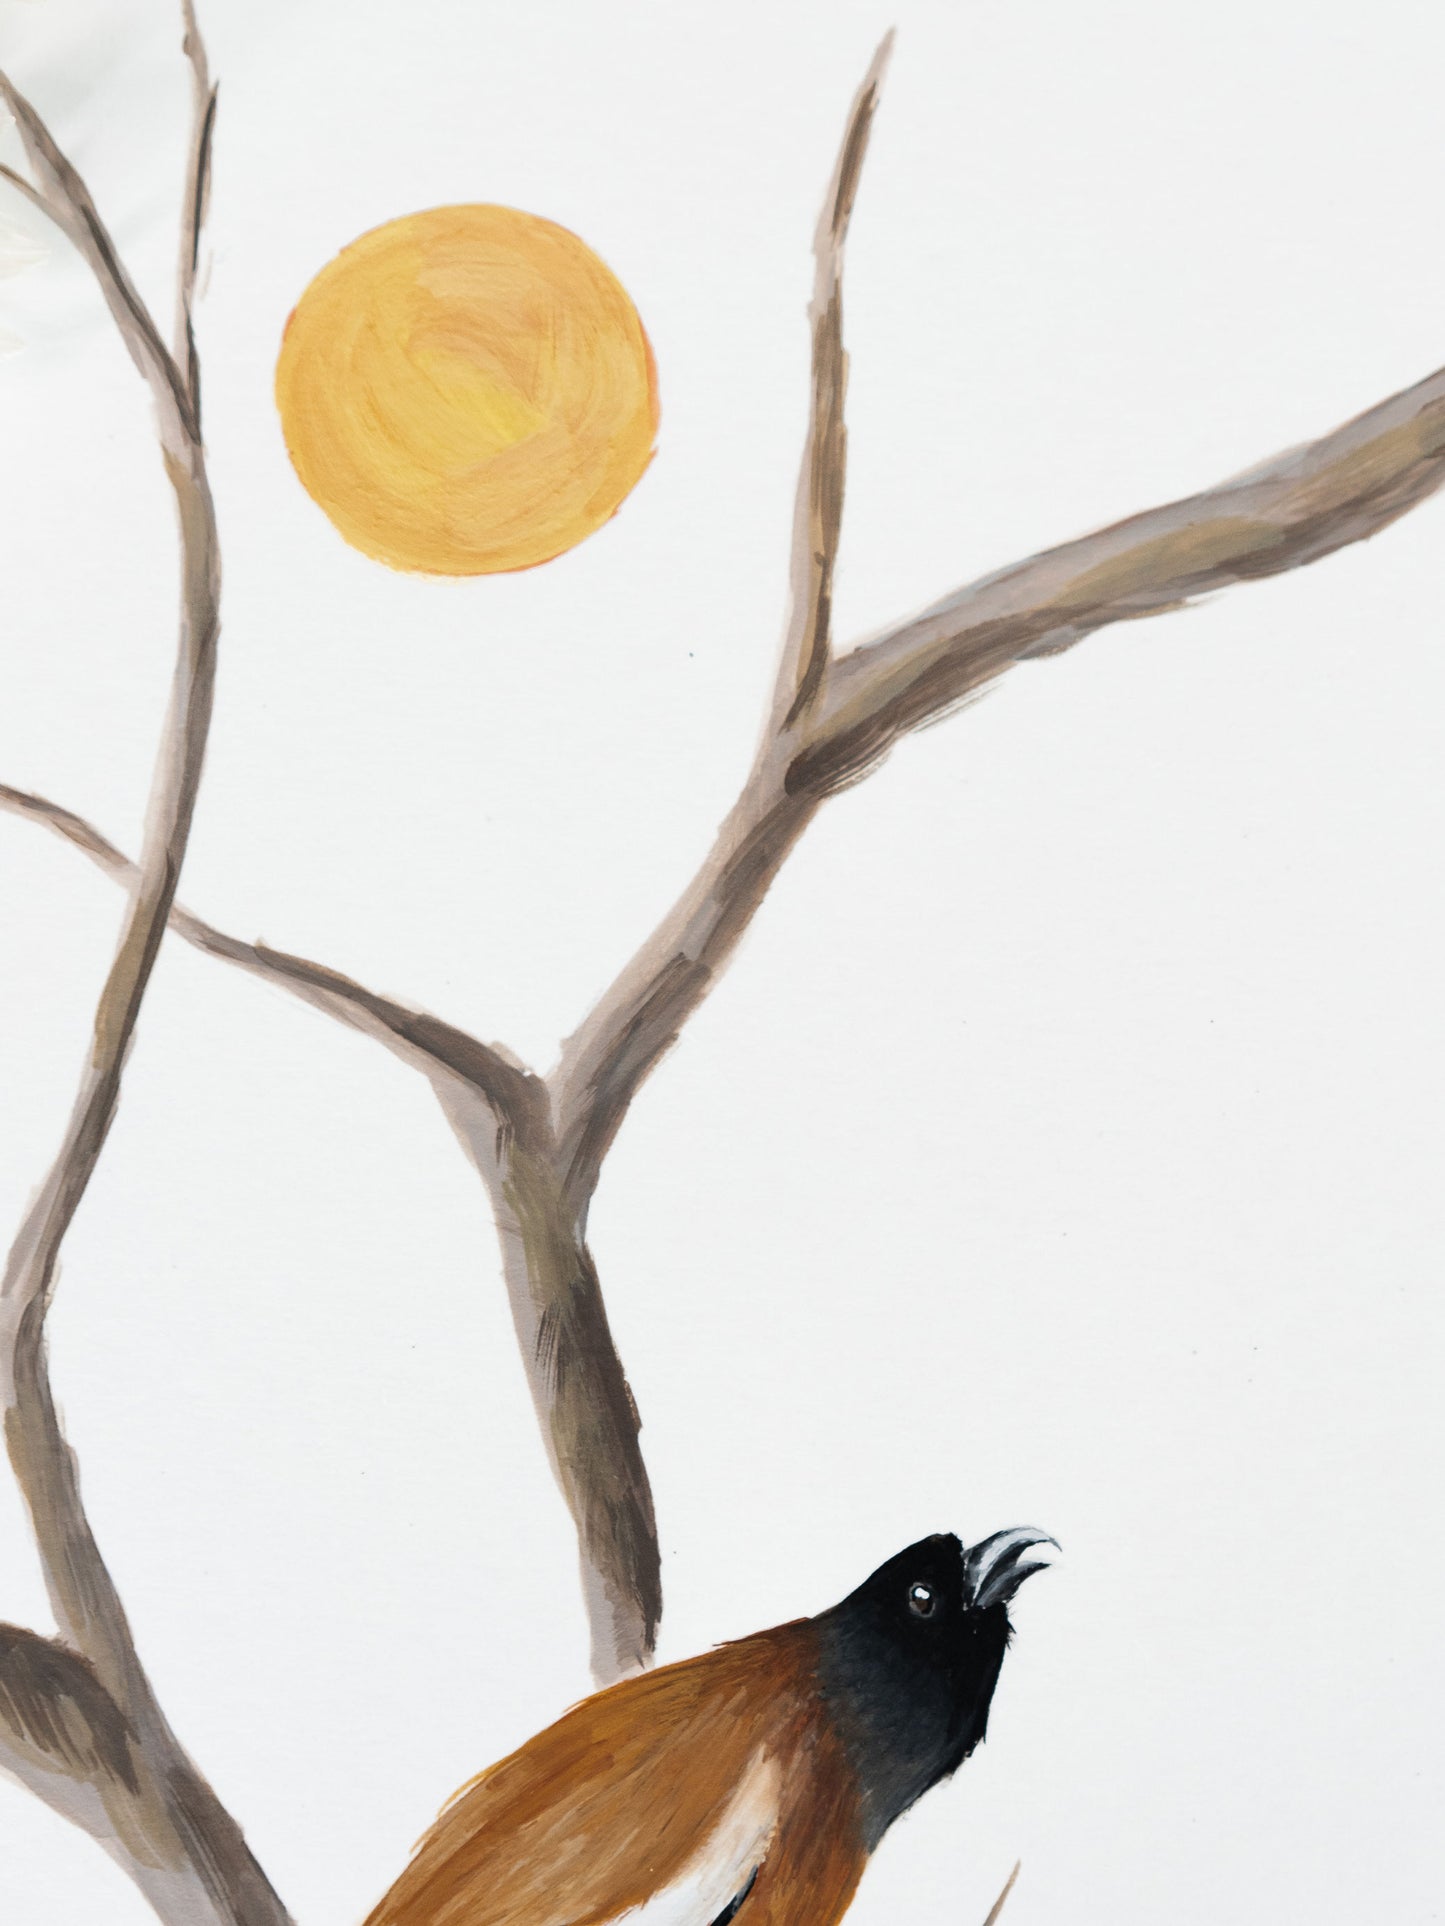 A Little Birdie Told Me : Original Gouache Painting